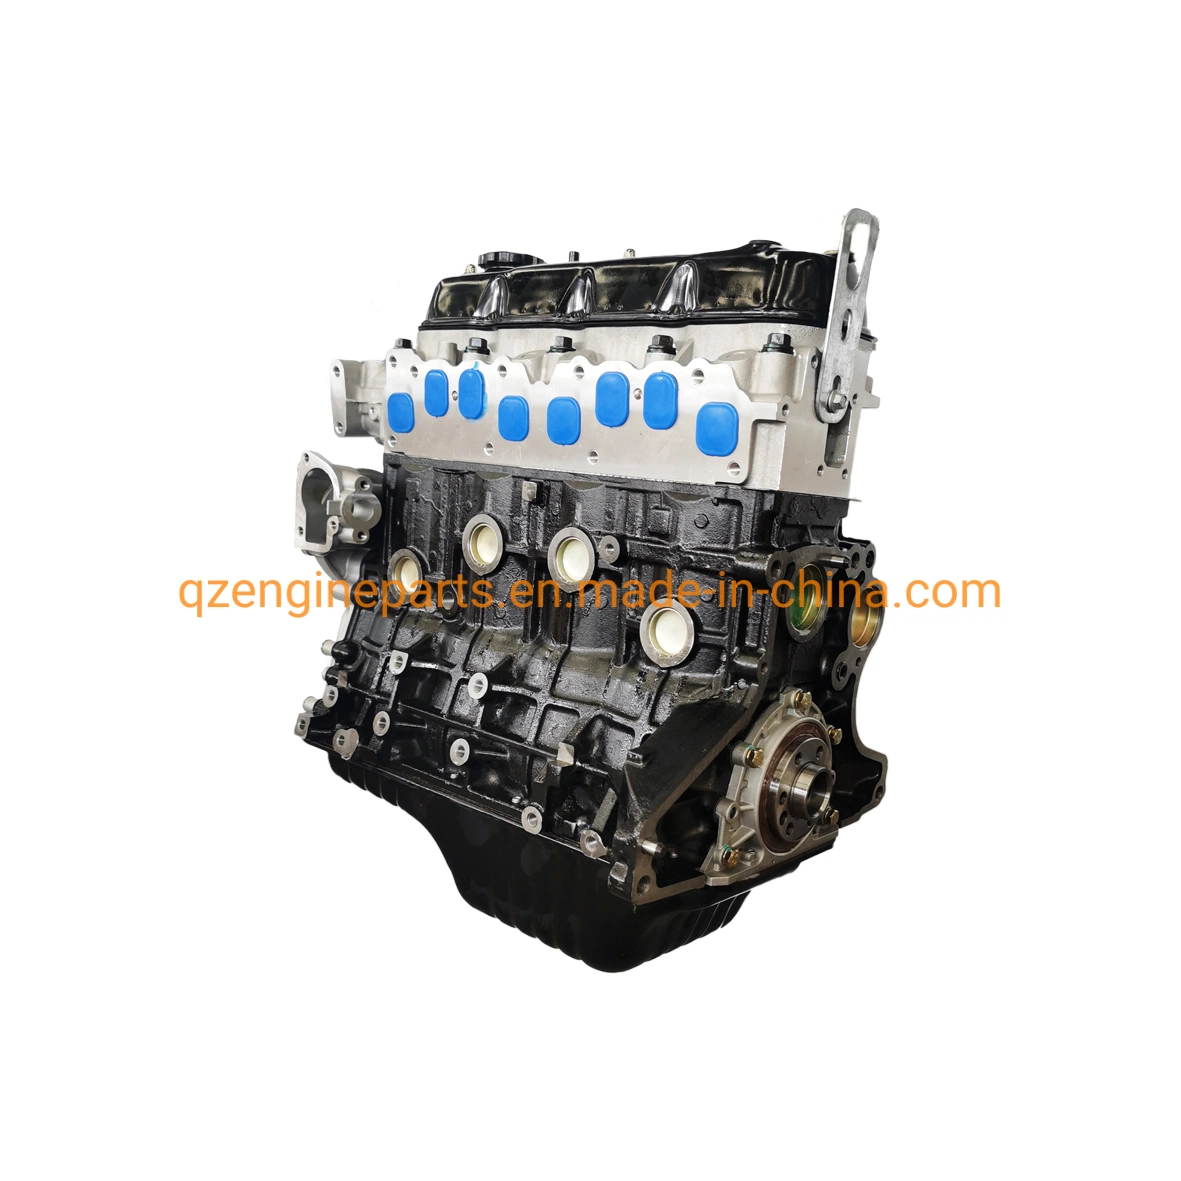 Motor a gasolina Auto 4 cilindros sem revestimento bloco longo do motor 4 anos 491q motor para Toyota Haice